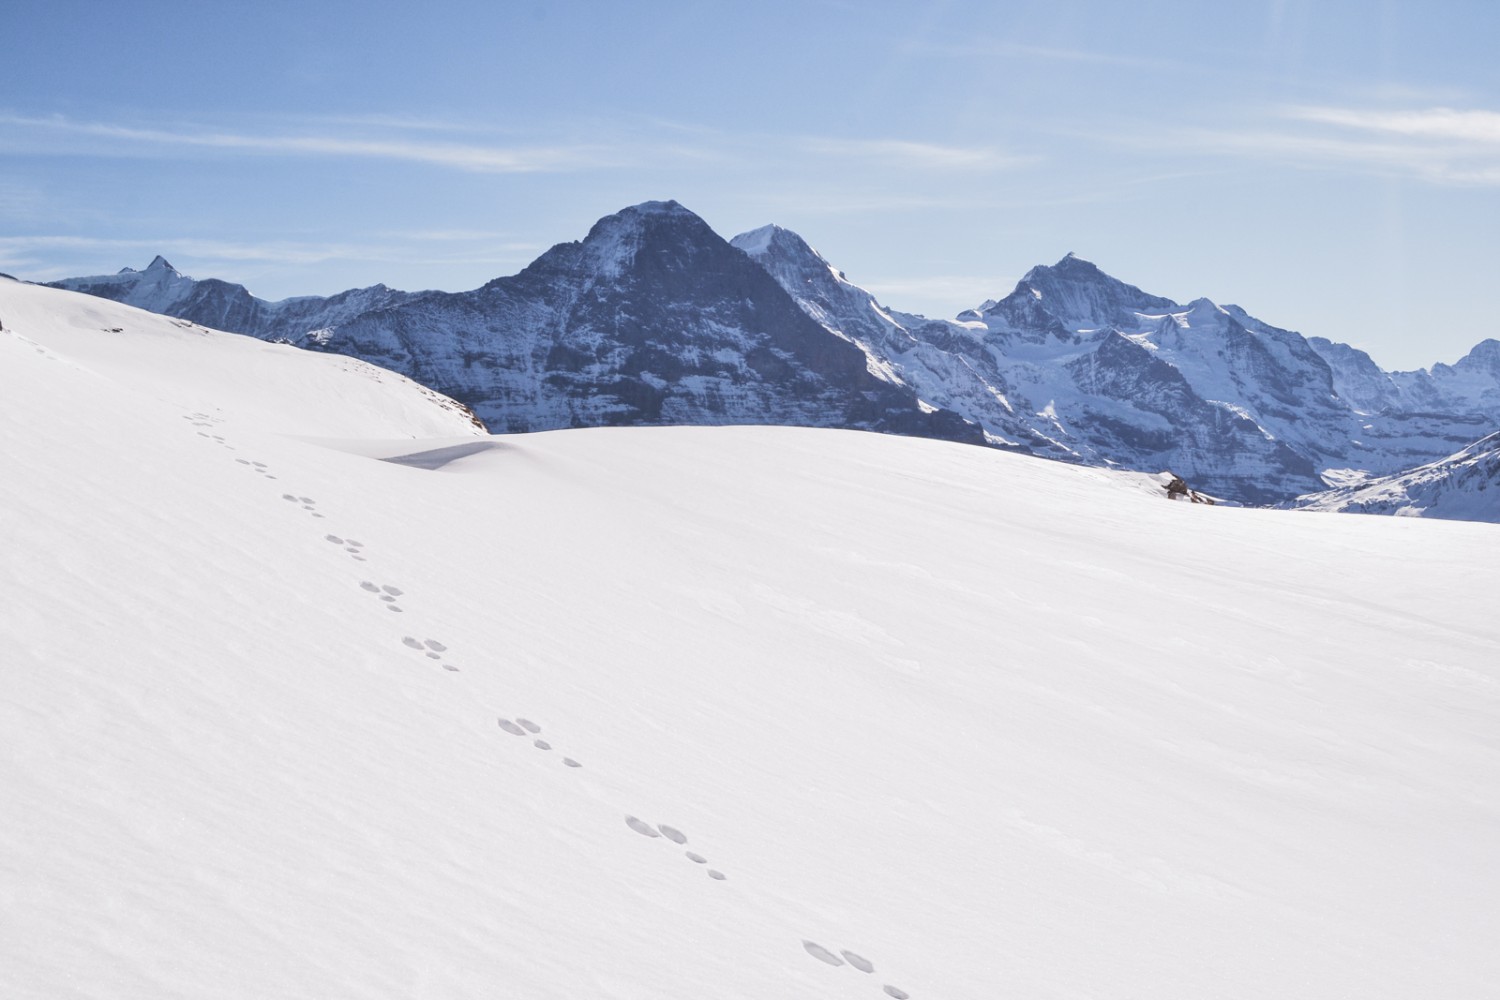 Les traces d’un lièvre dans la neige devant l’Eiger, le Mönch et la Jungfrau. Photo: Sabine Joss